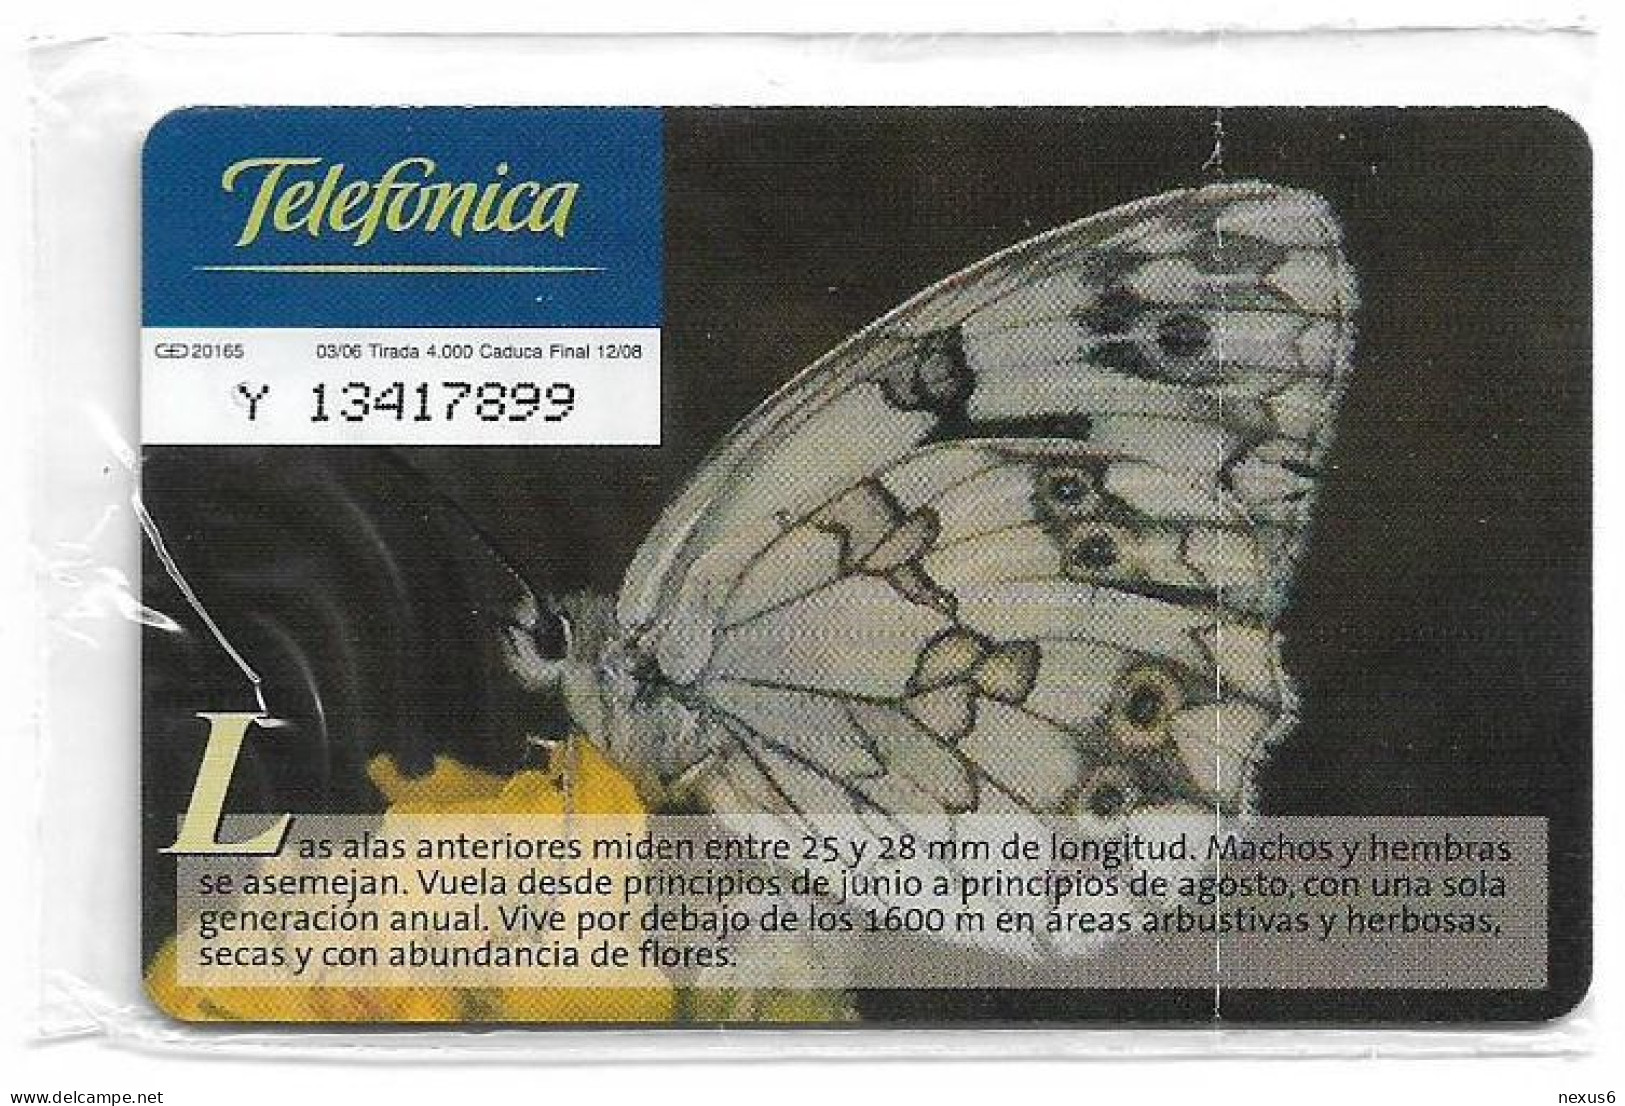 Spain - Telefonica - Fauna Iberica - Mariposa Melanargia, Butterfly - P-583 - 03.2006, 3€, 4.000ex, NSB - Privatausgaben